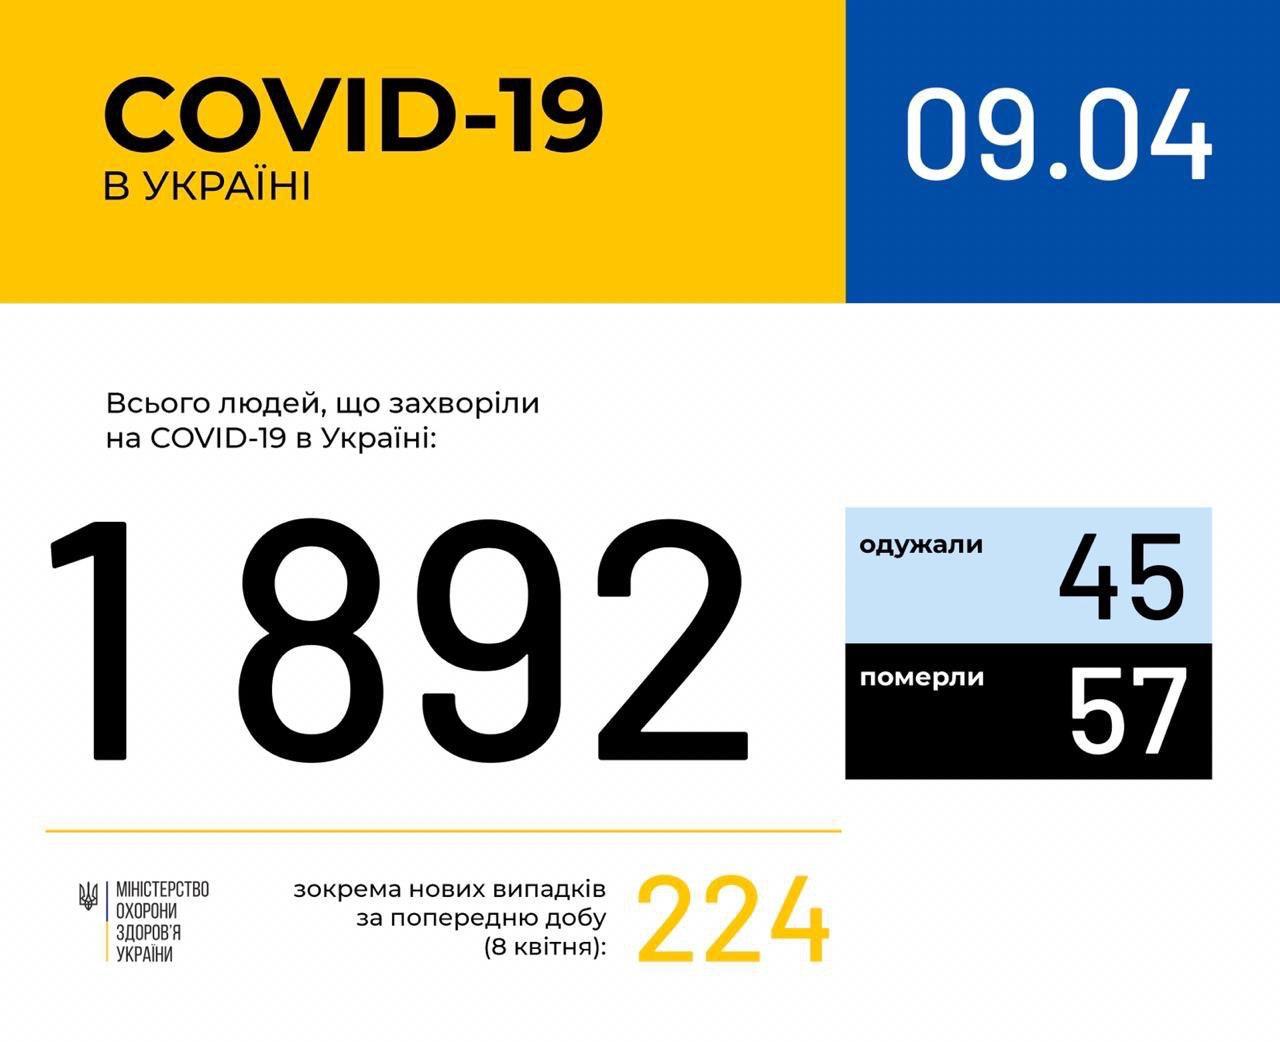 В Україні зафіксовано 1892 випадки коронавірусної хвороби COVID-19, - МОЗ